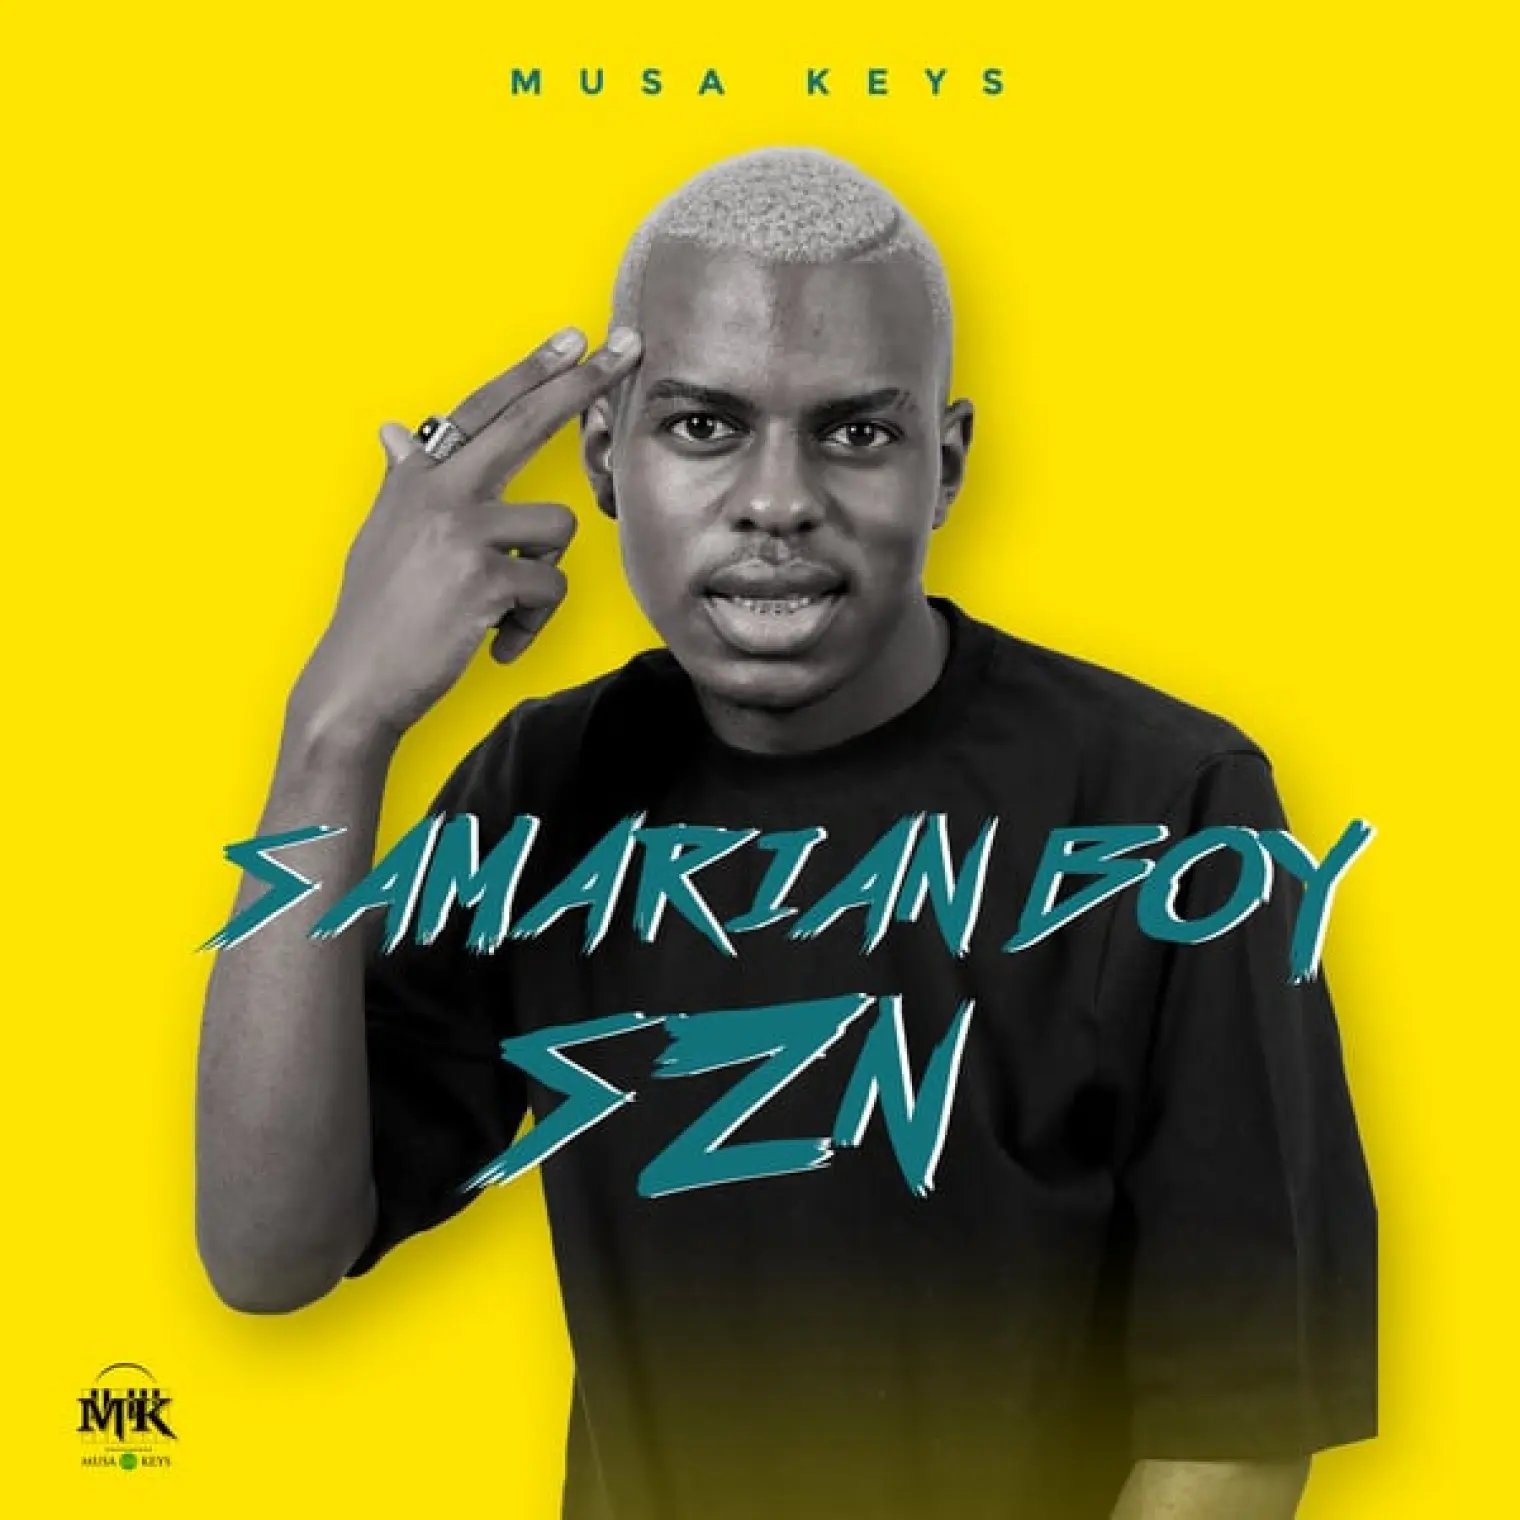 Samarian Boy SZN -  Musa Keys 